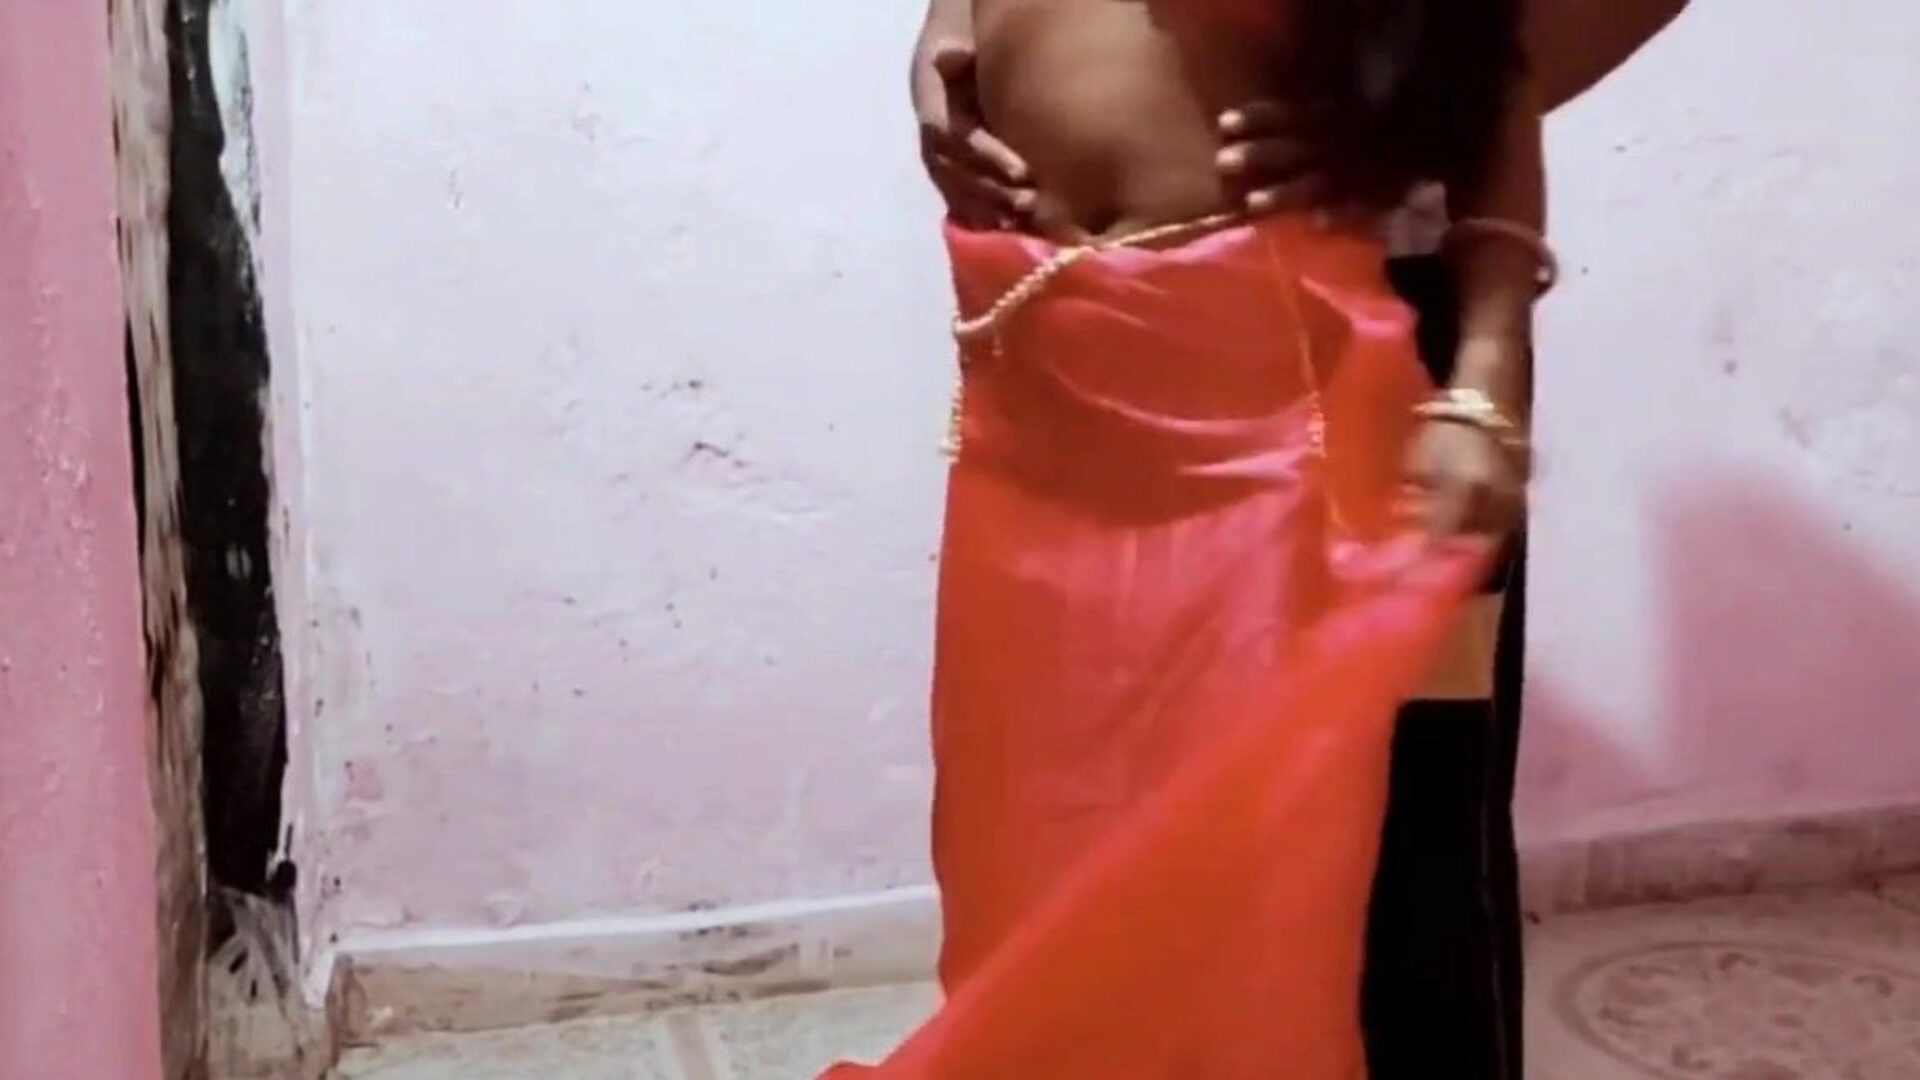 alex ne bhabhi ko choda pokój zabawa z mężem: darmowe porno b9 oglądaj alex ne bhabhi ko choda pokój zabawa z mężem scena filmowa na xhamster - ostateczne archiwum darmowych scen filmowych Sri Lanki azjatyckiej HD XXX pornografia z rur filmowych